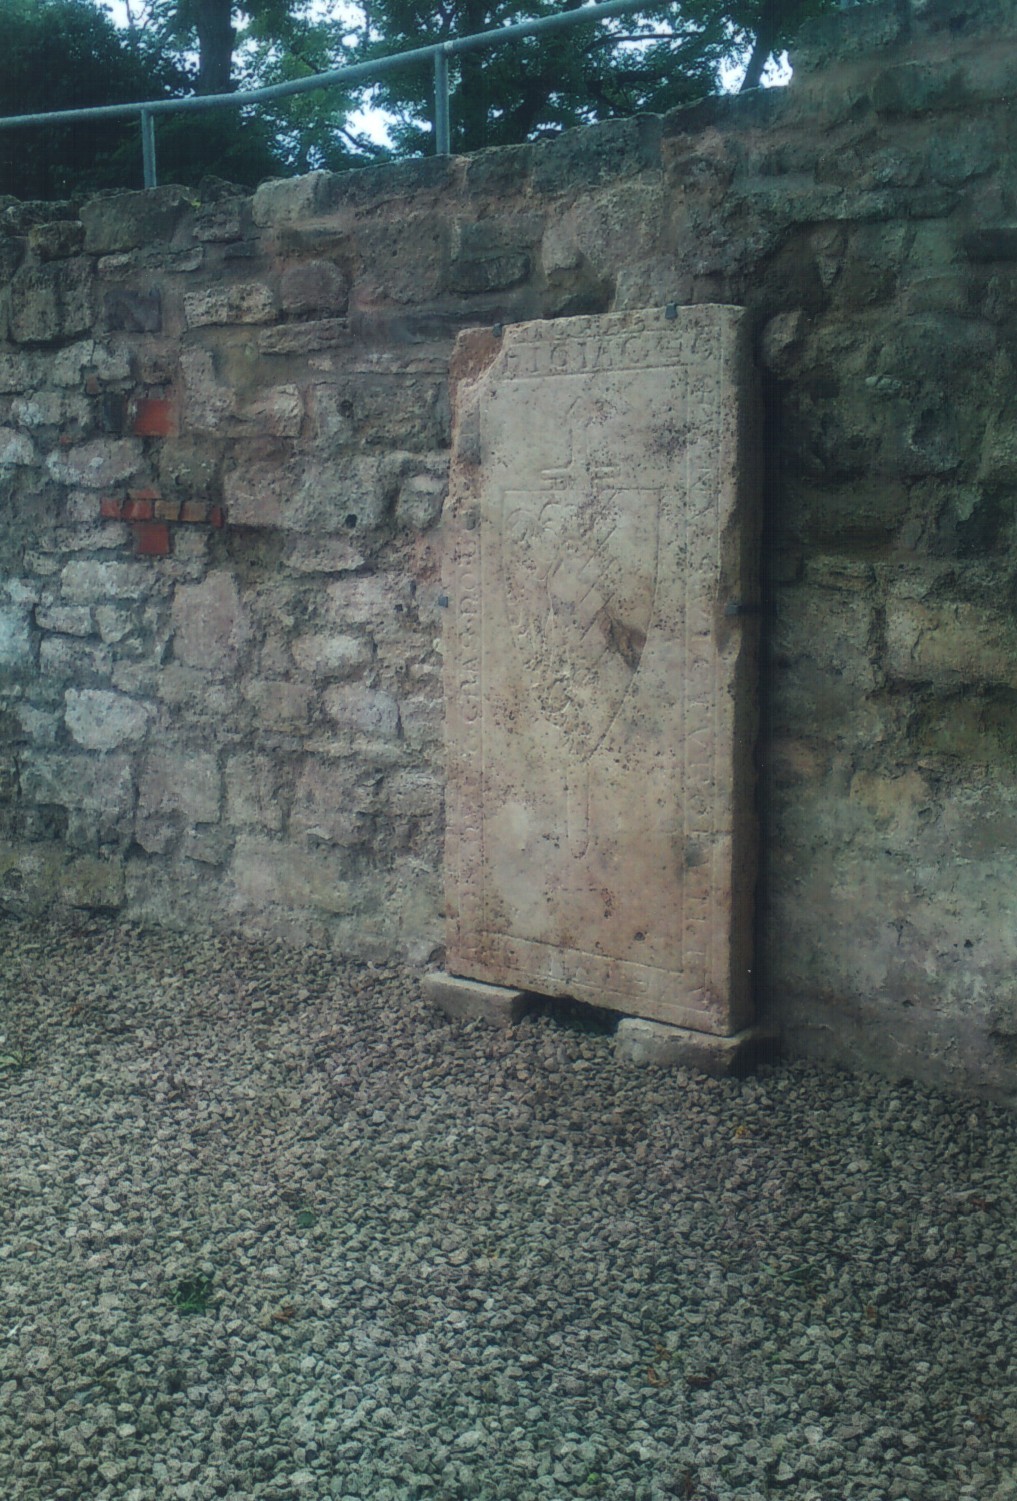 25.06.2012 – Aufstellen der restaurierten, historischen Grabplatte des Albert von Herbsleben aus dem 13. Jahrhundert